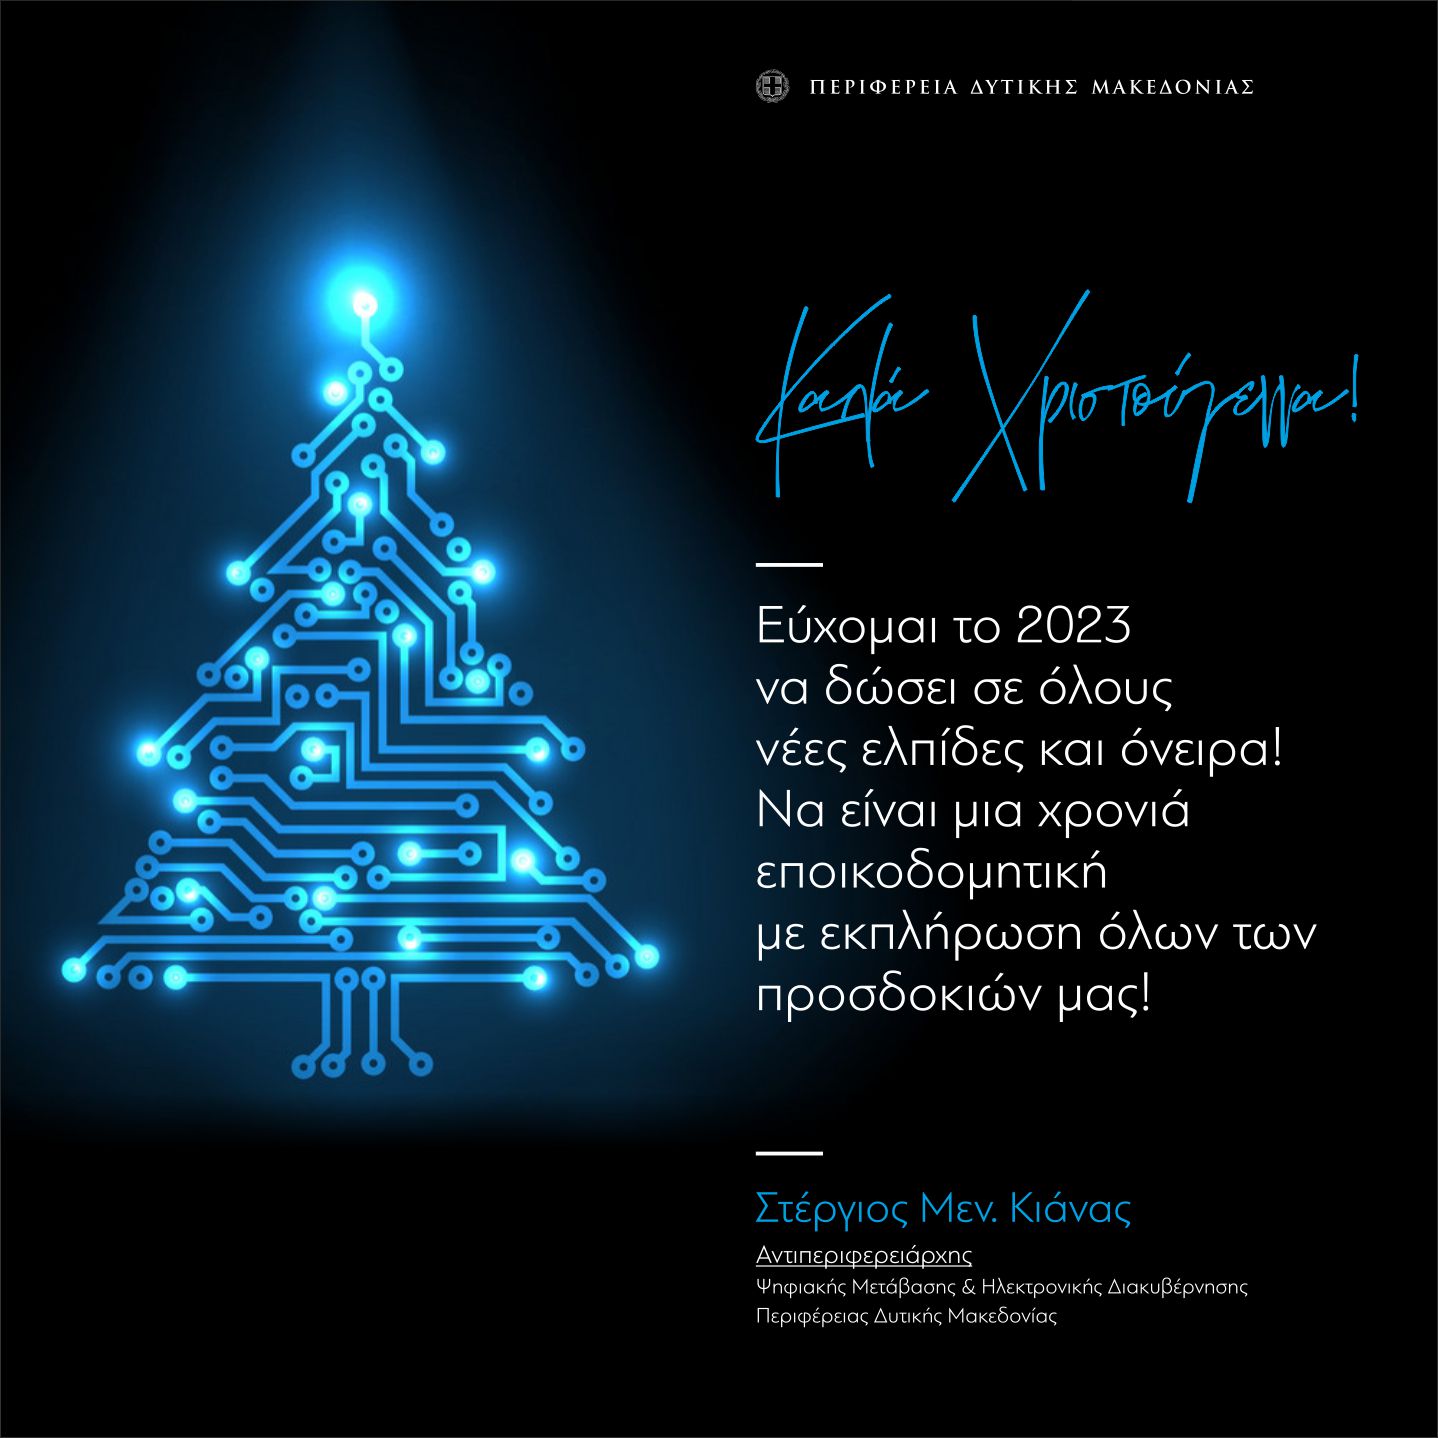 Χριστουγεννιάτικες ευχές του Αντιπεριφερειάρχη Ψηφιακής Μετάβασης & Ηλεκτρονικής Διακυβέρνησης κ. Σ. Κιάνα 2022